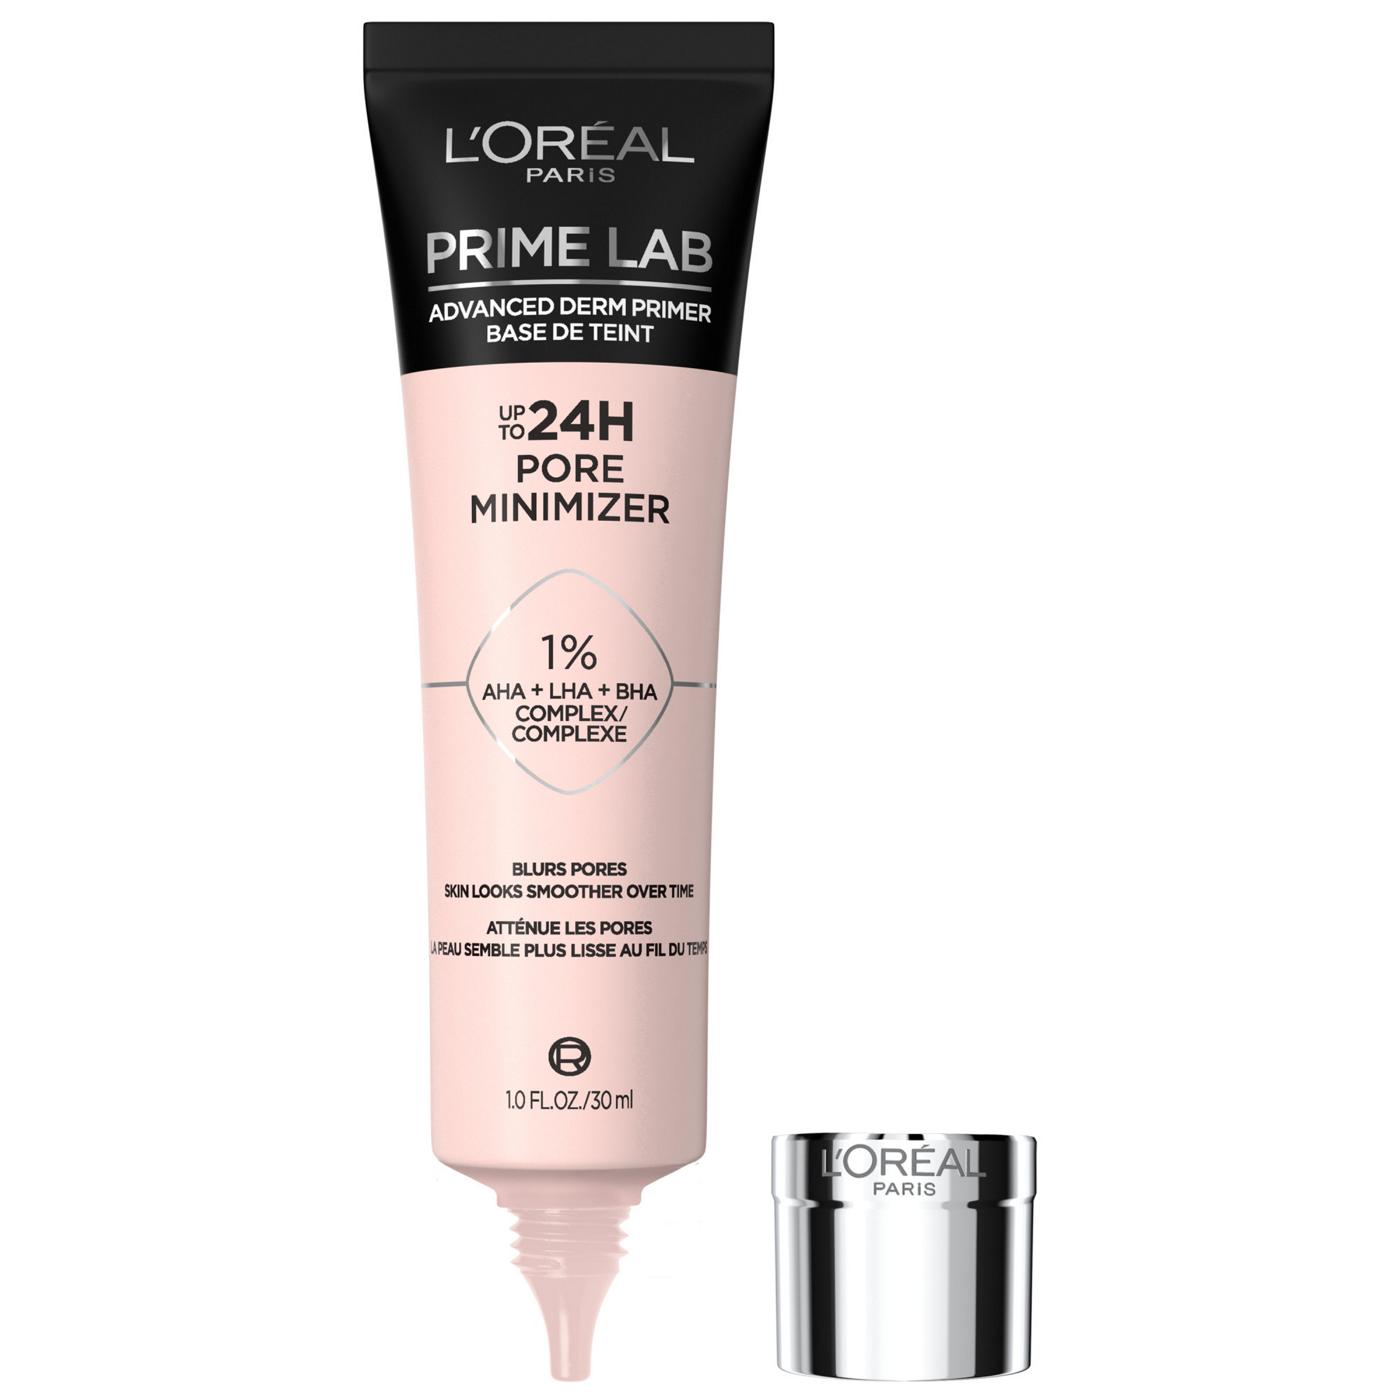 L'Oréal Paris Prime Lap Primer - Pore Minimizer; image 1 of 6